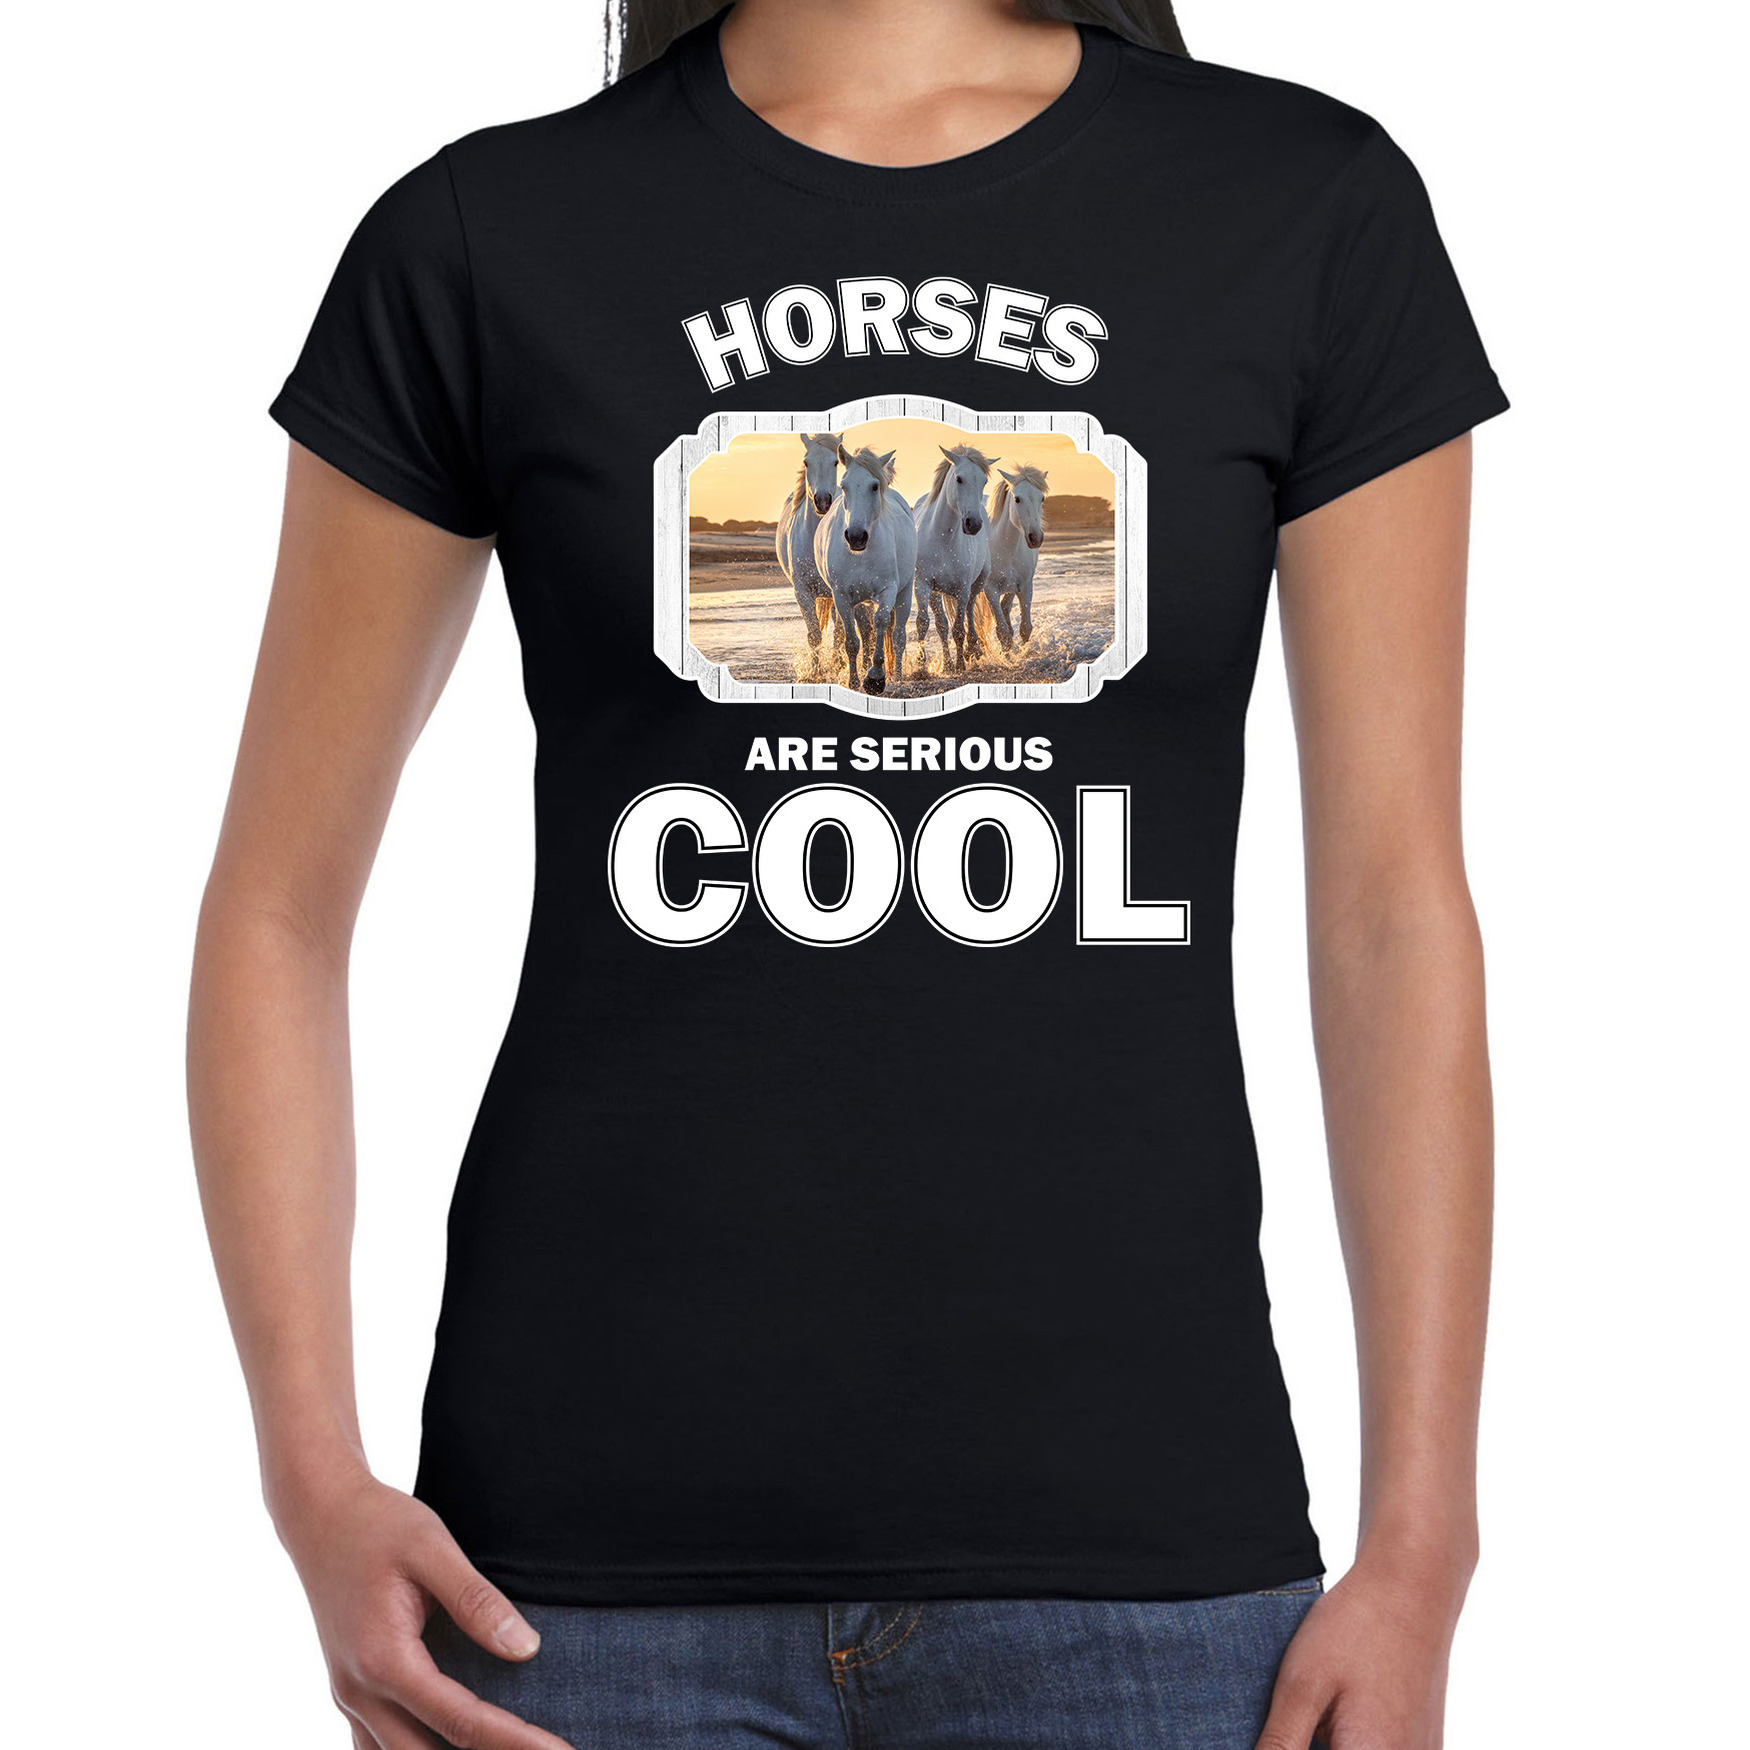 Dieren wit paard t-shirt zwart dames horses are cool shirt